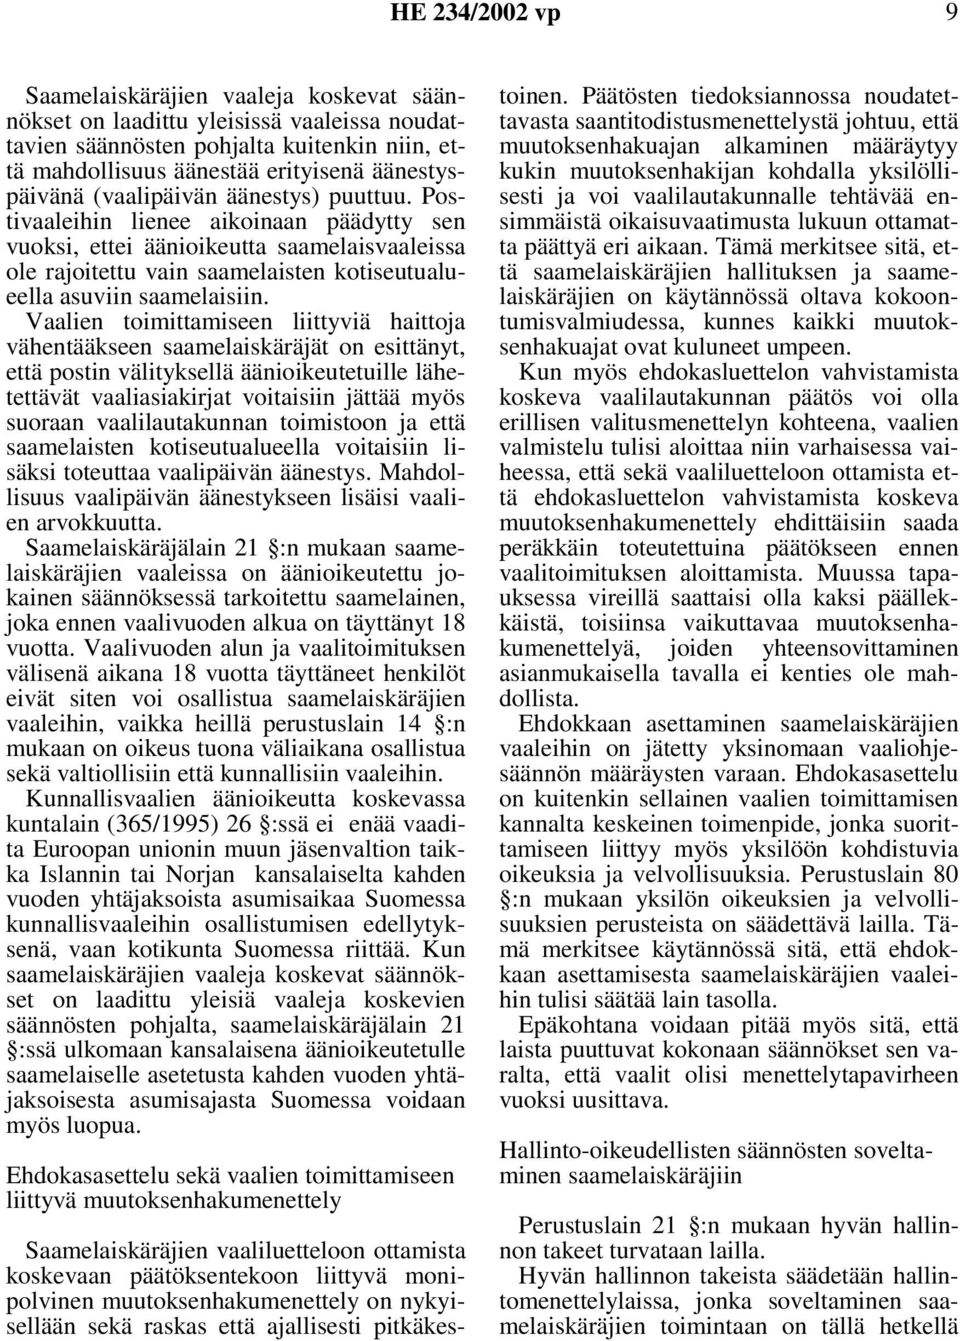 Vaalien toimittamiseen liittyviä haittoja vähentääkseen saamelaiskäräjät on esittänyt, että postin välityksellä äänioikeutetuille lähetettävät vaaliasiakirjat voitaisiin jättää myös suoraan